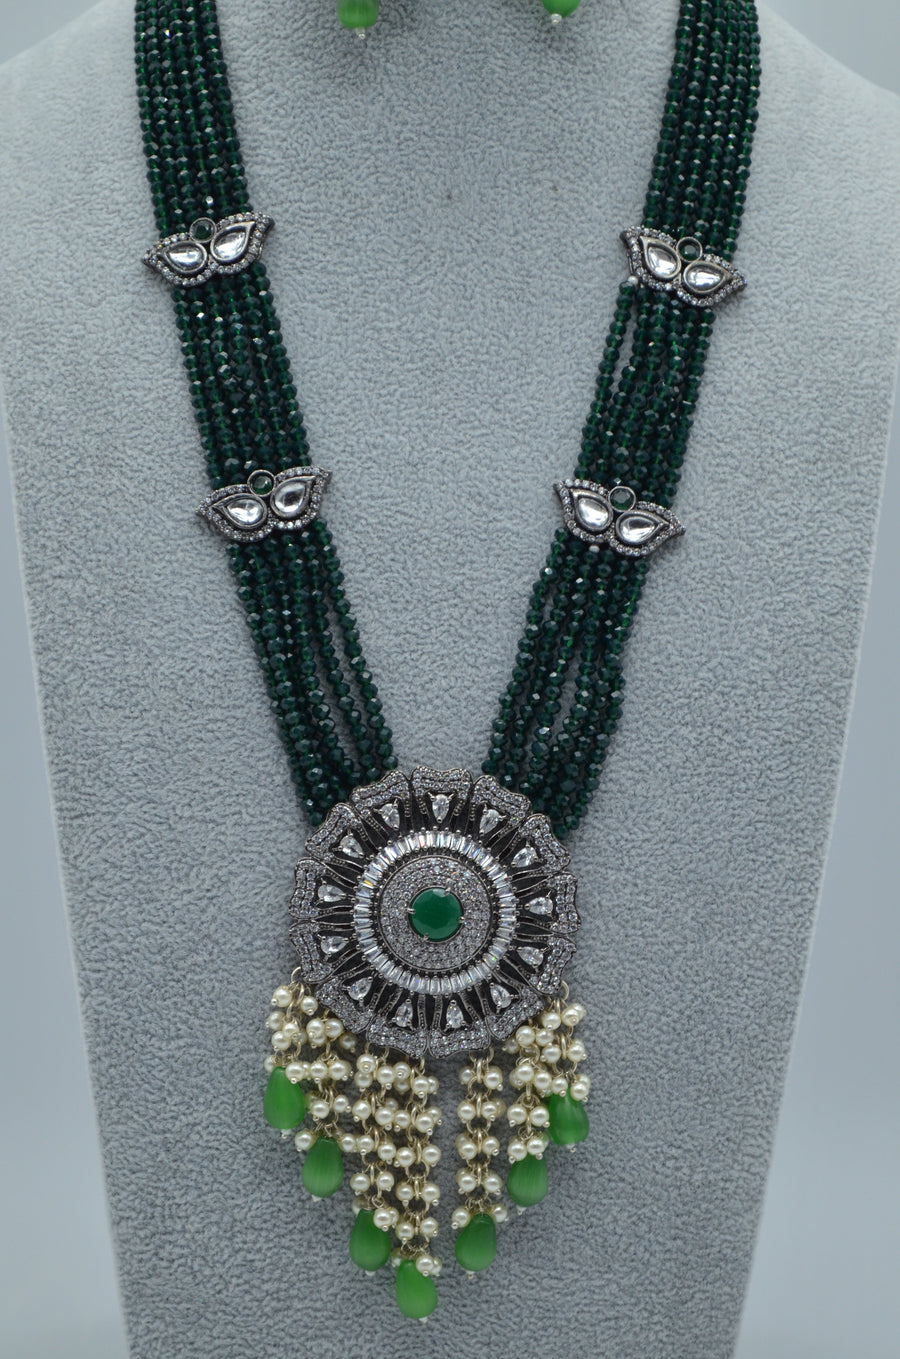 Designer Cz Center Pendant Long Necklace Set - Victorian Finish Necklaces